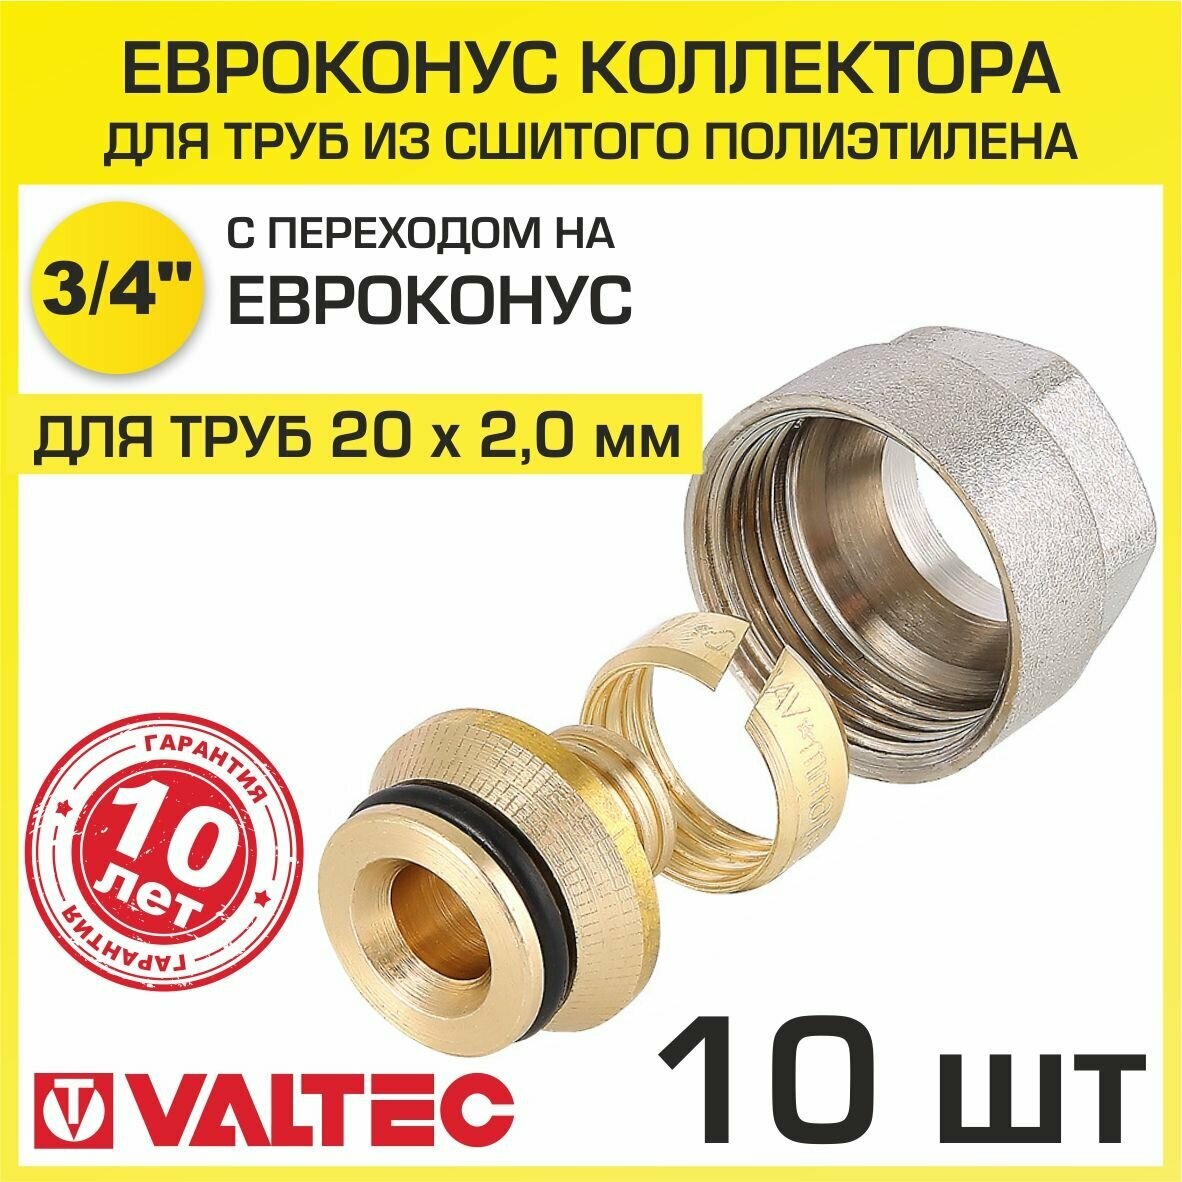 Евроконус 3/4" для труб из сшитого полиэтилена 20x2,0 мм (10 шт) VALTEC VT.4410. NVE.20